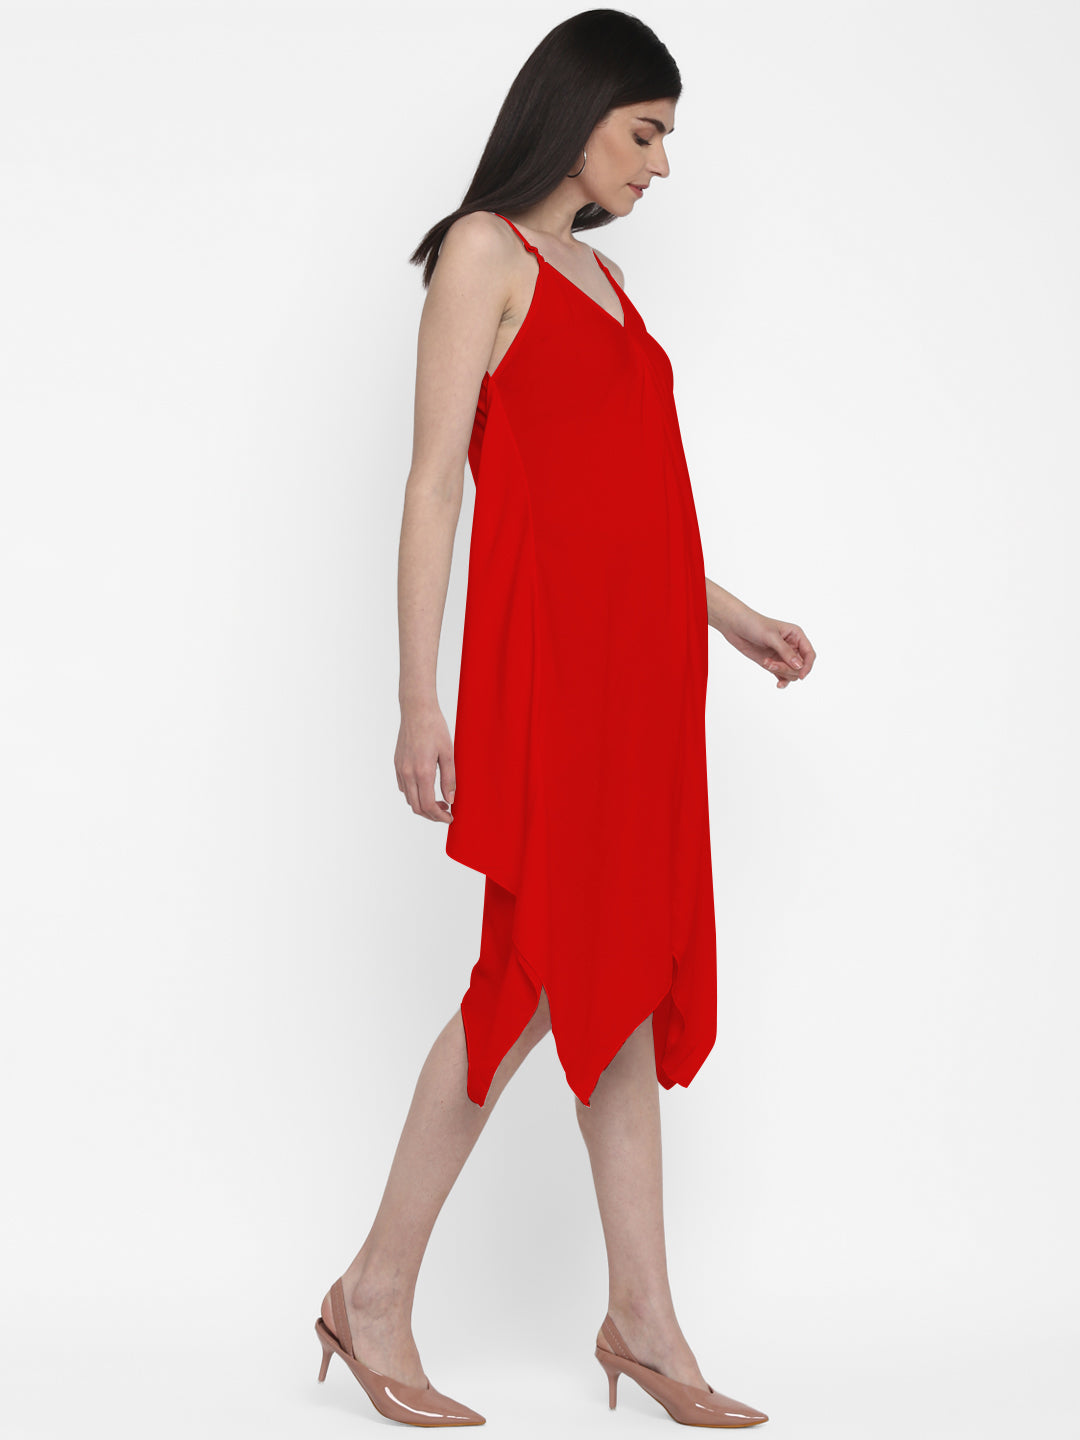 Free Size Stylish Red Midi Dress